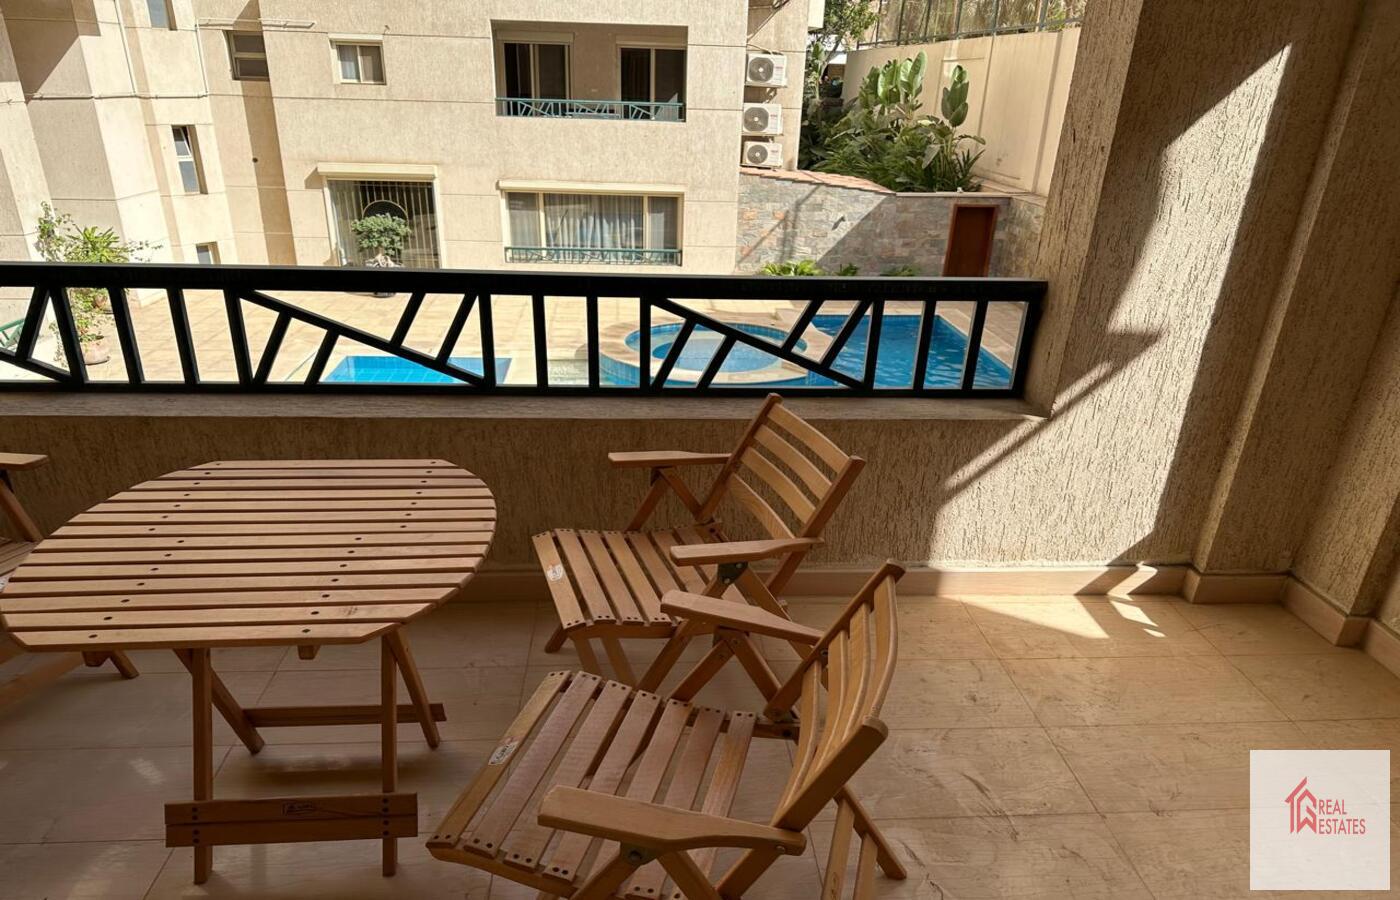 شقة مودرن بحمام سباحة مشترك للإيجار بالمعادي